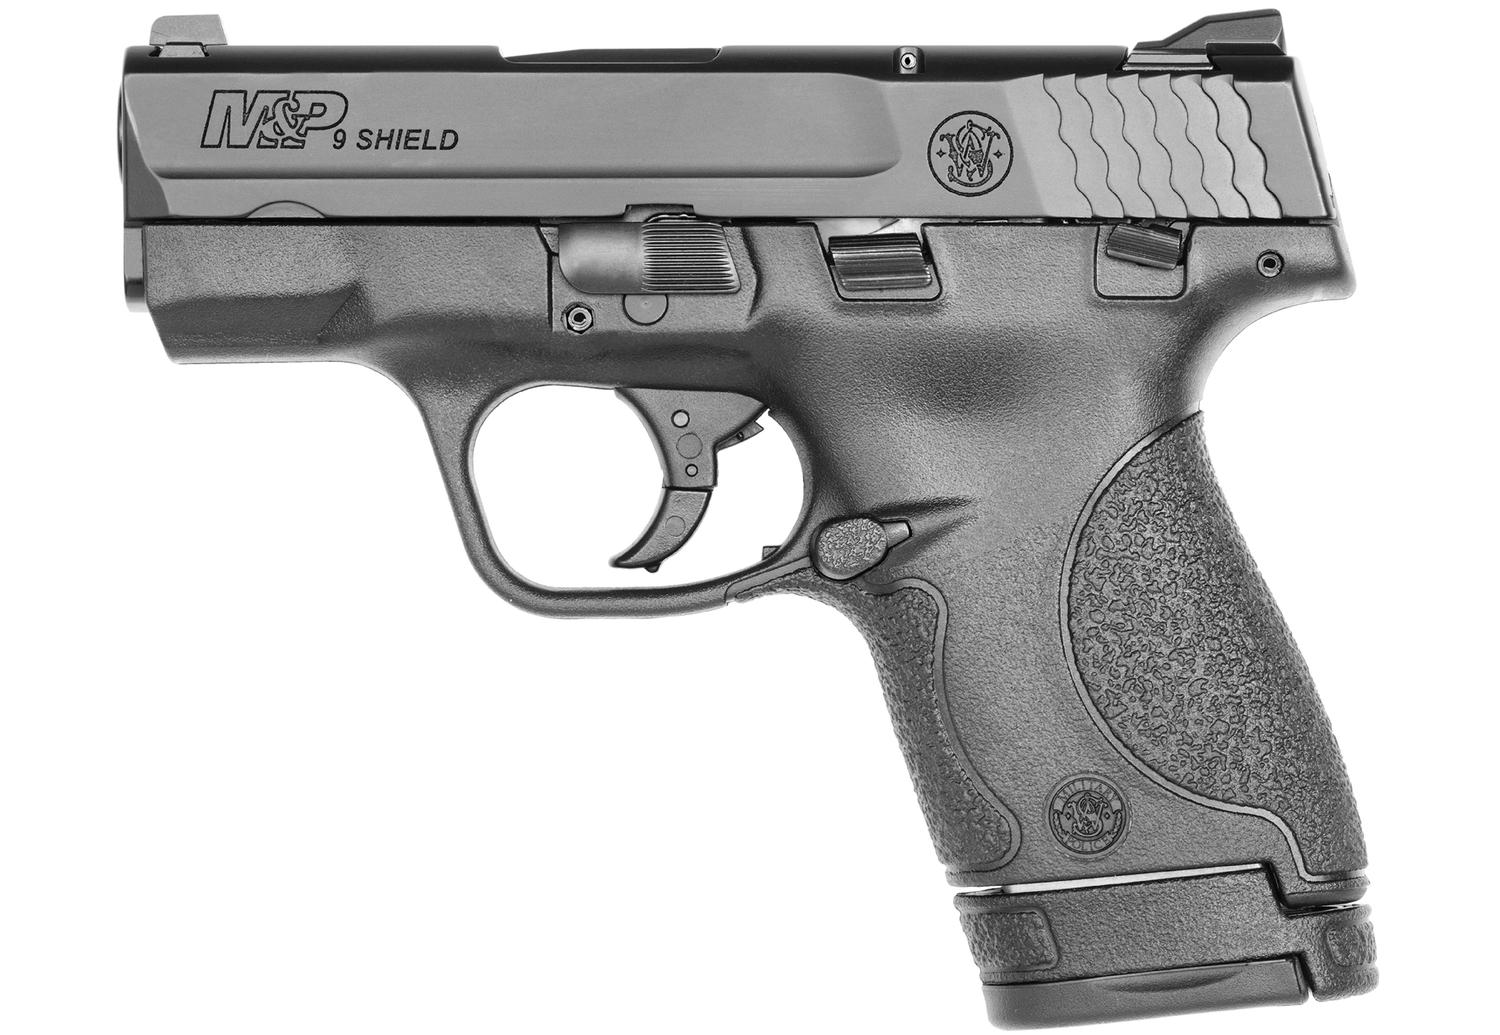  M & P9 Shield 9mm 3.1in - Black